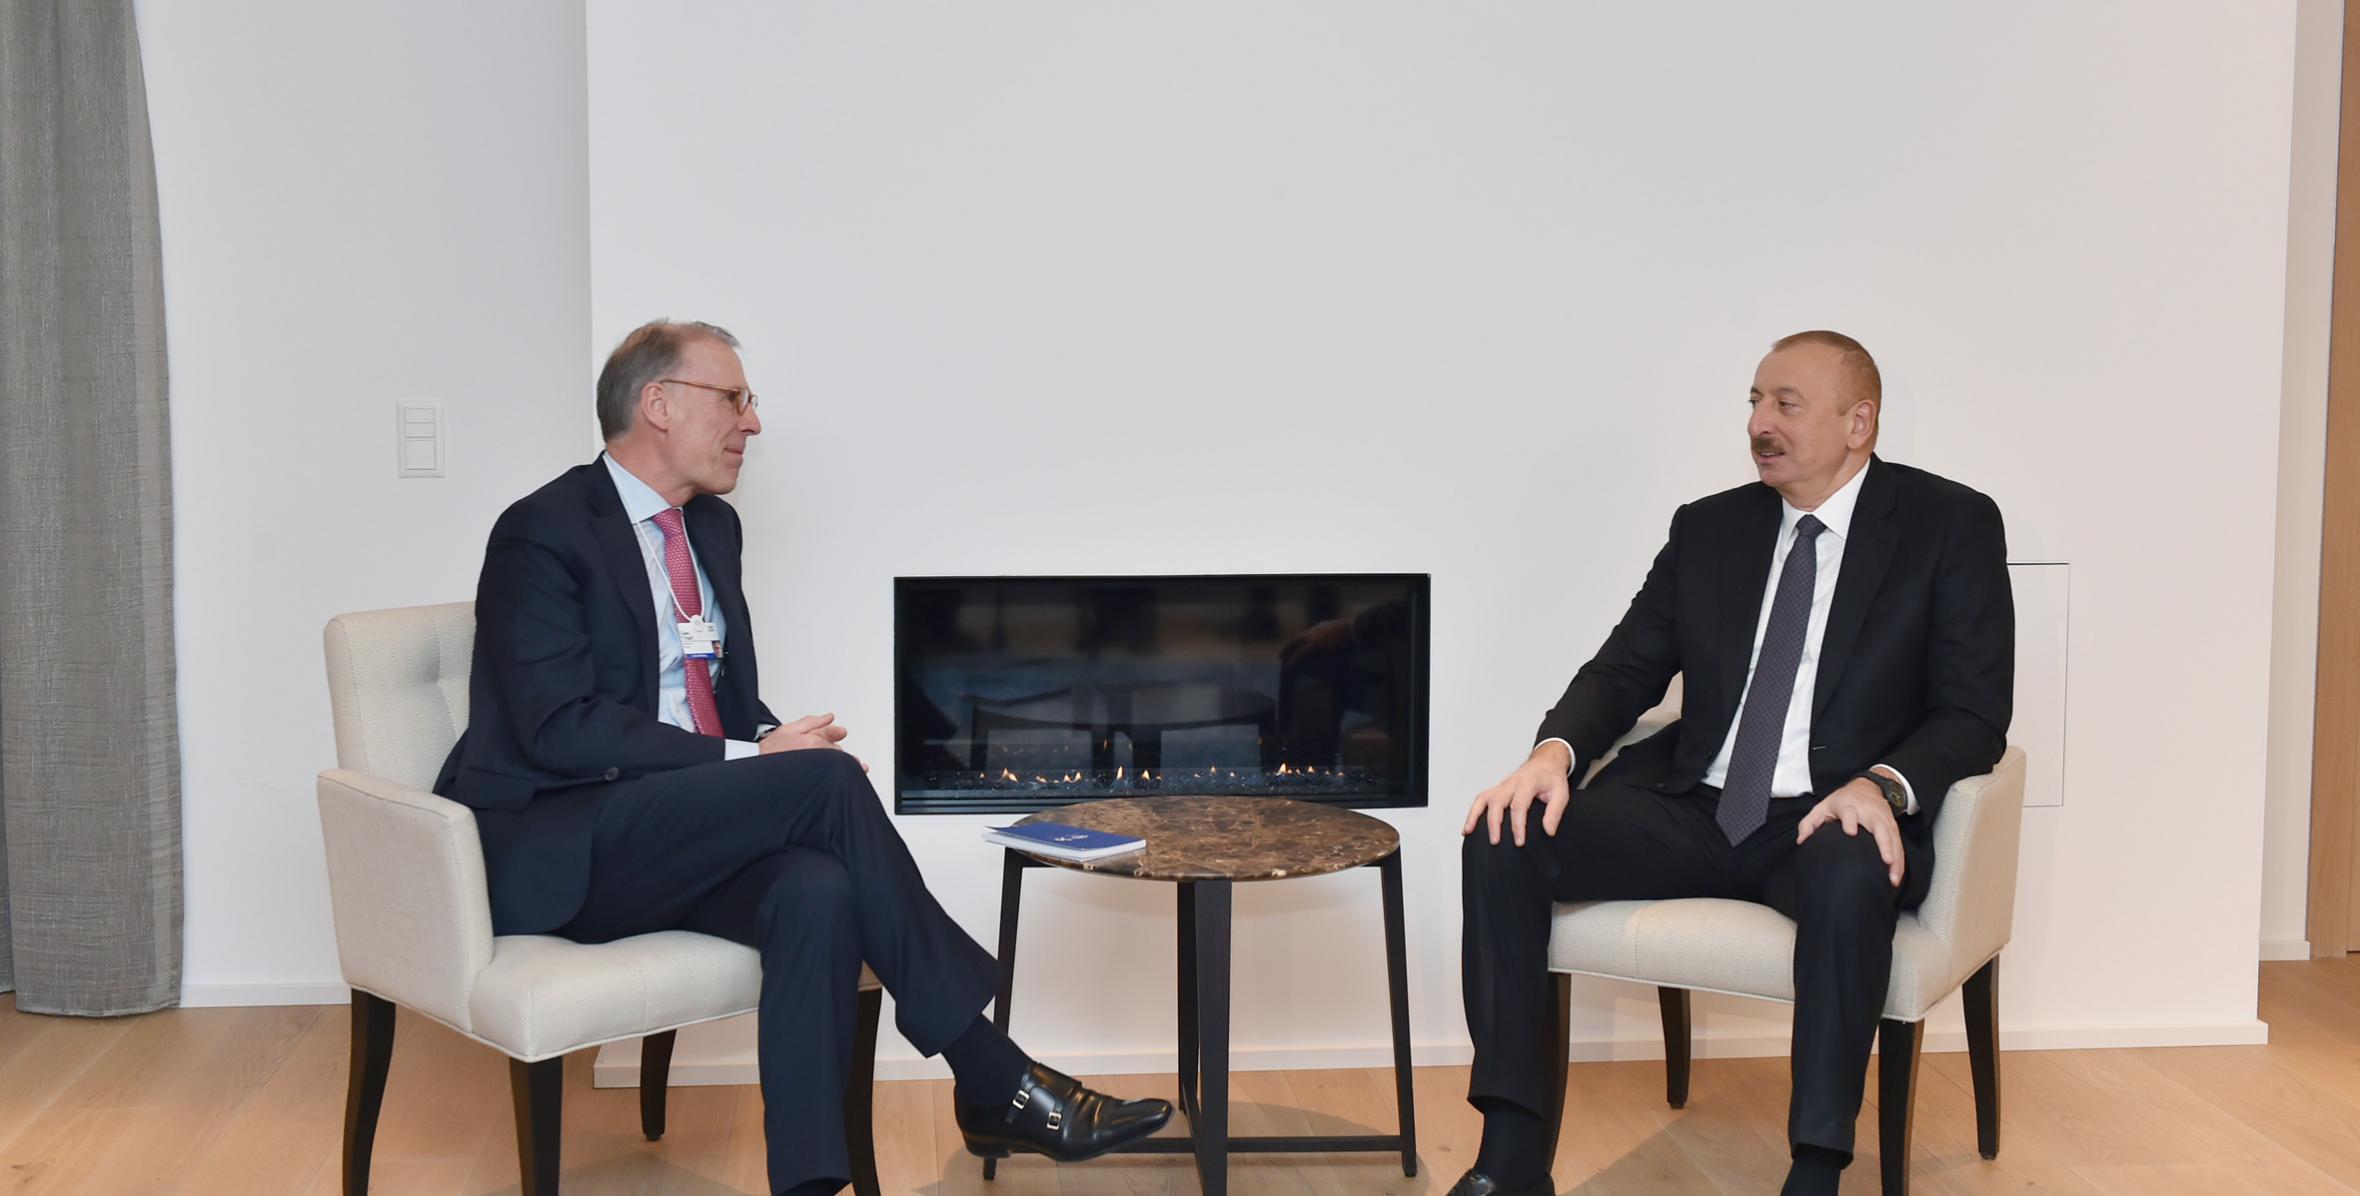 İlham Əliyev Davosda “Carlsberg Group” şirkətinin baş icraçı direktoru Cees’t Hart ilə görüşüb